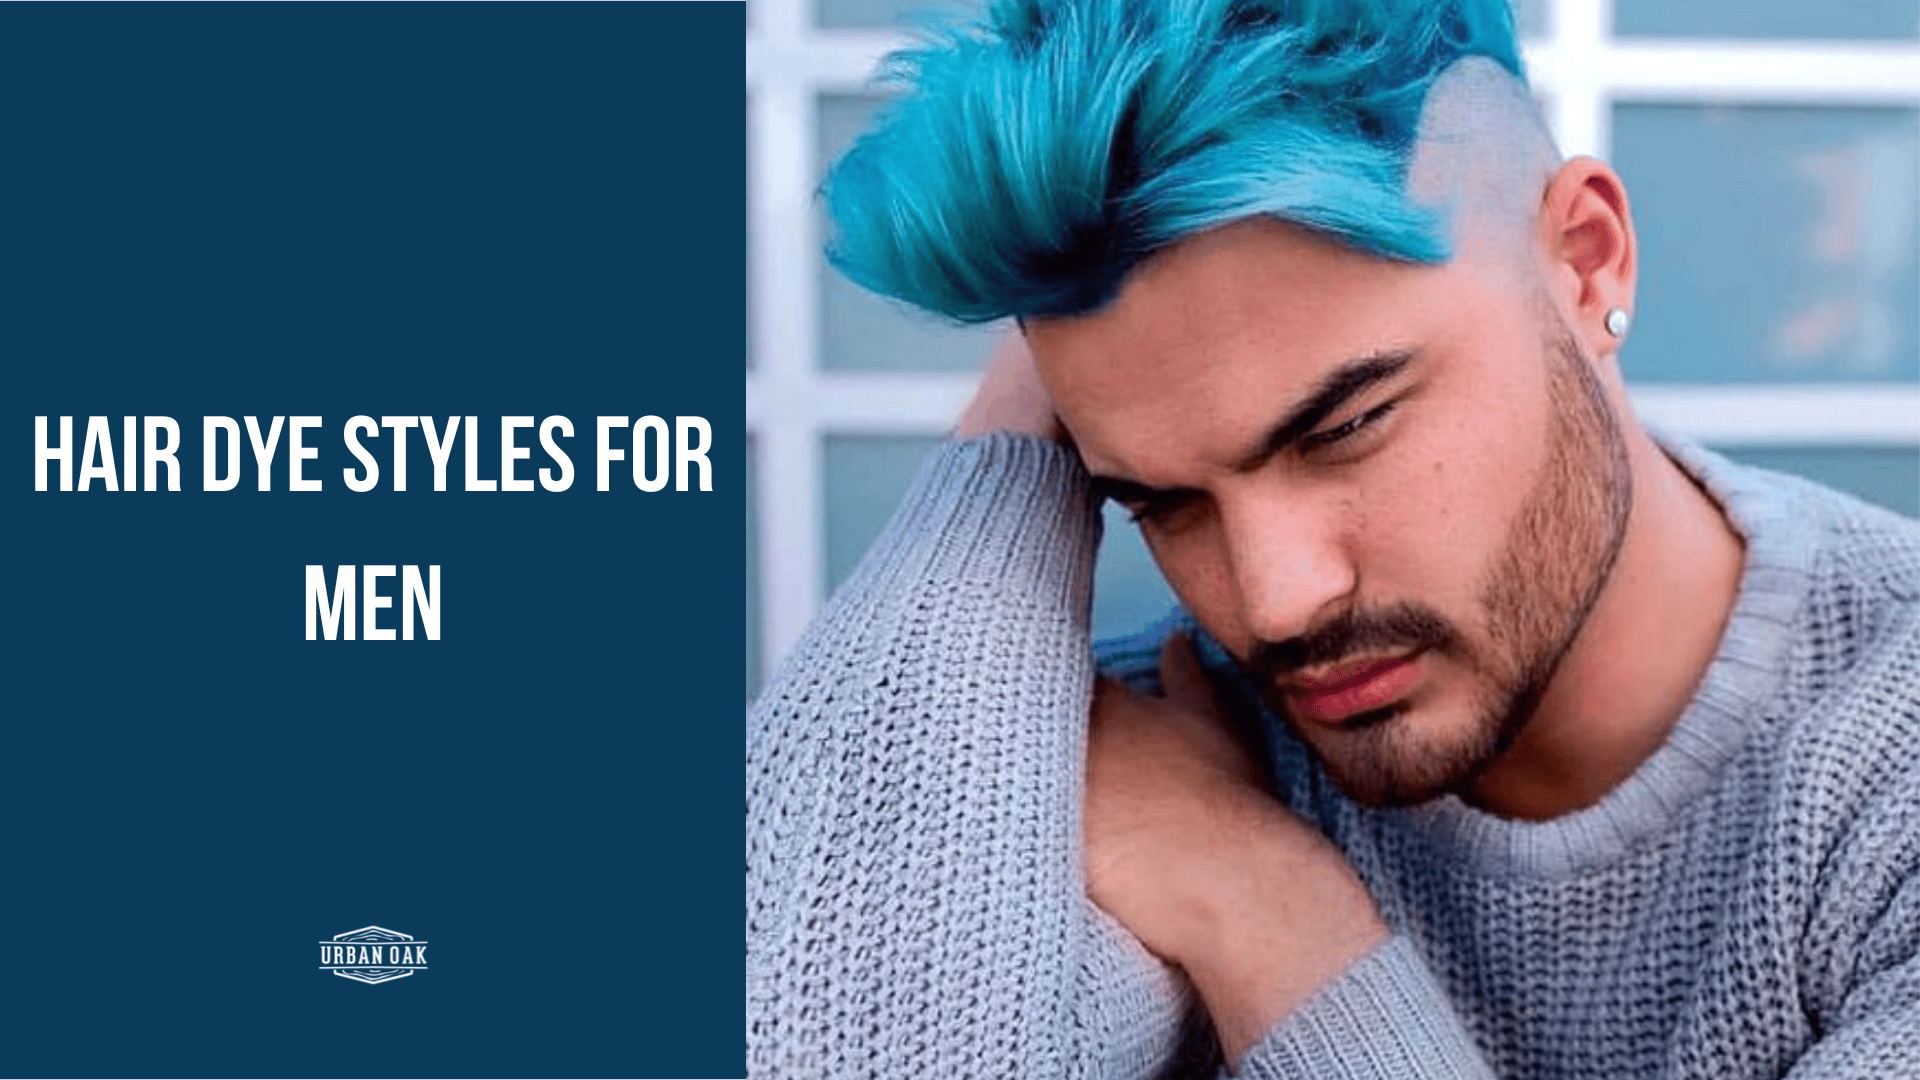 Hair Dye Styles for Men